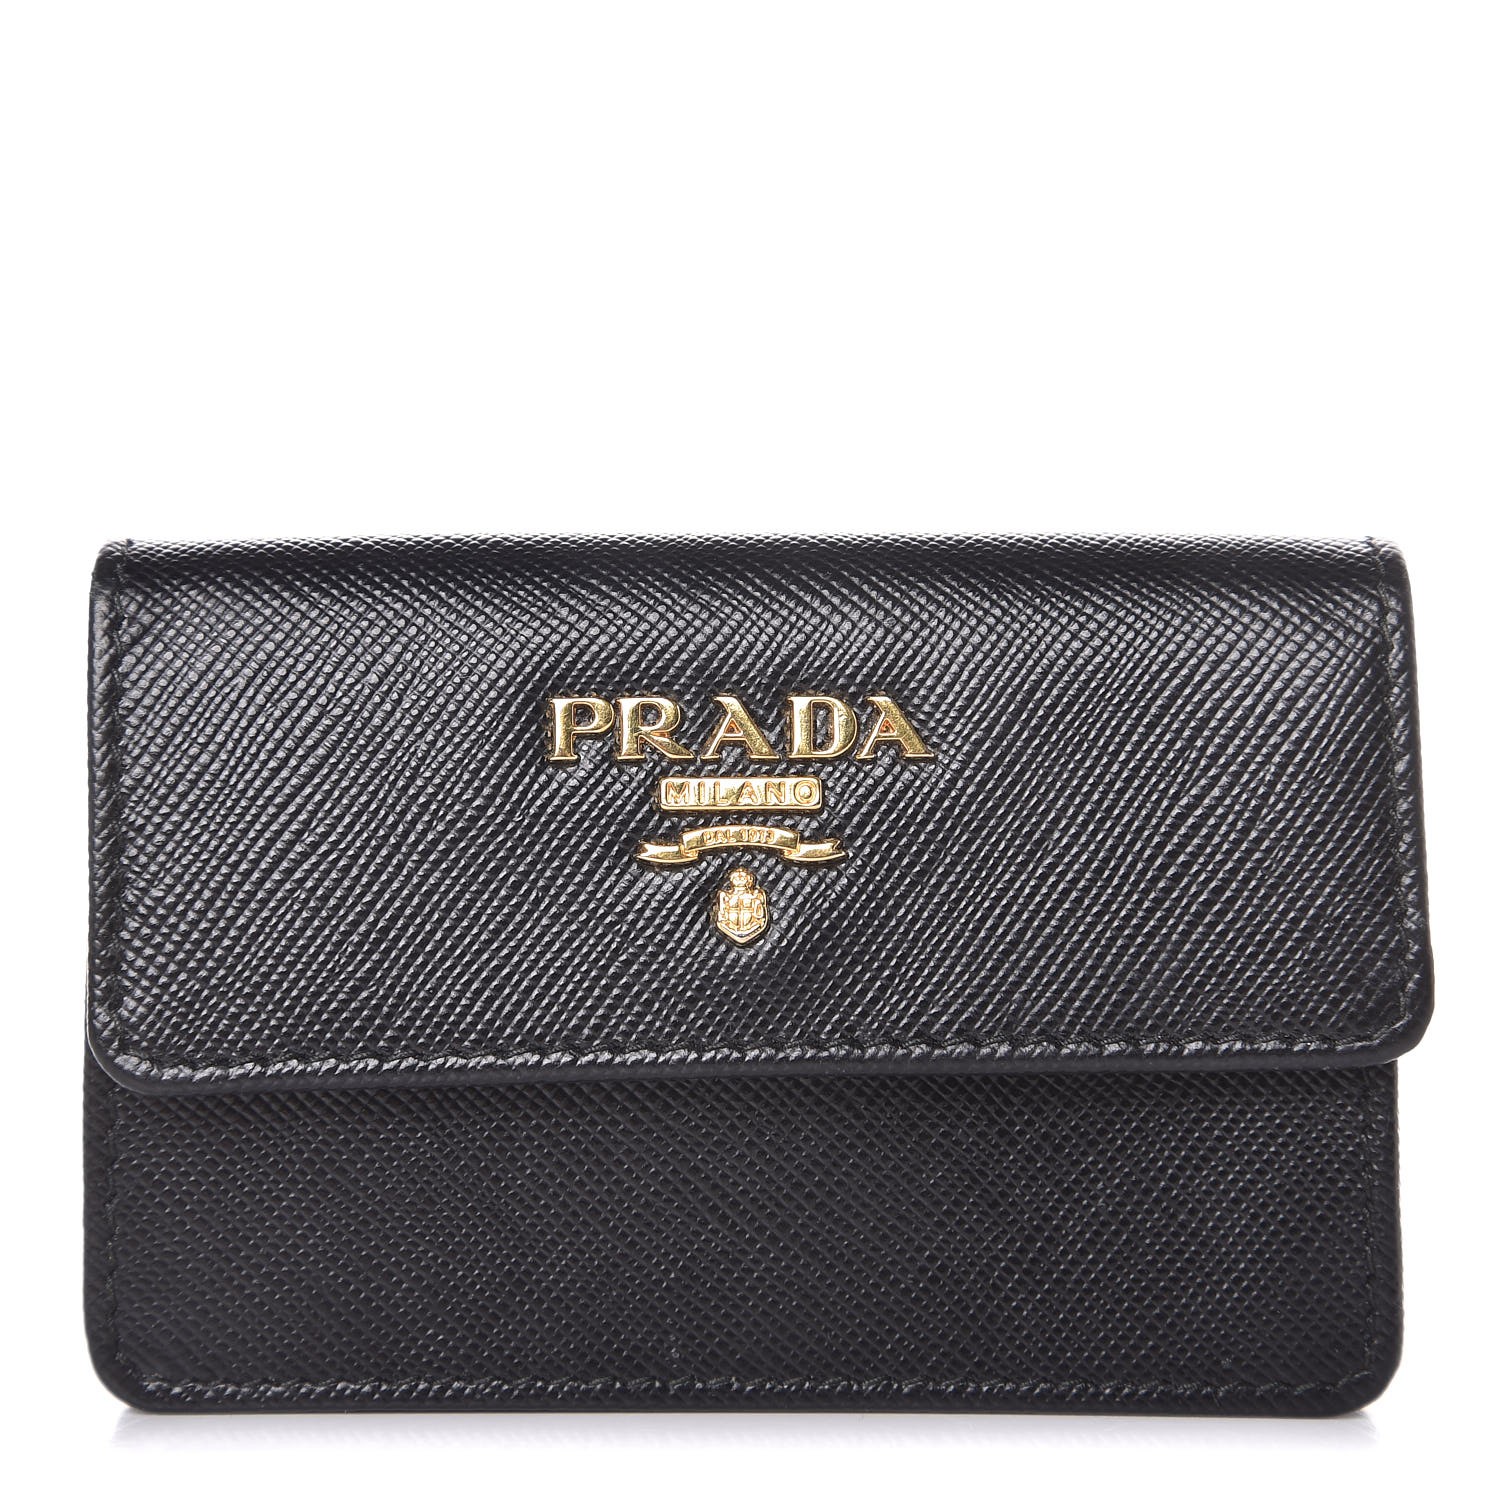 PRADA Saffiano Metal Business Card Holder Black 321006